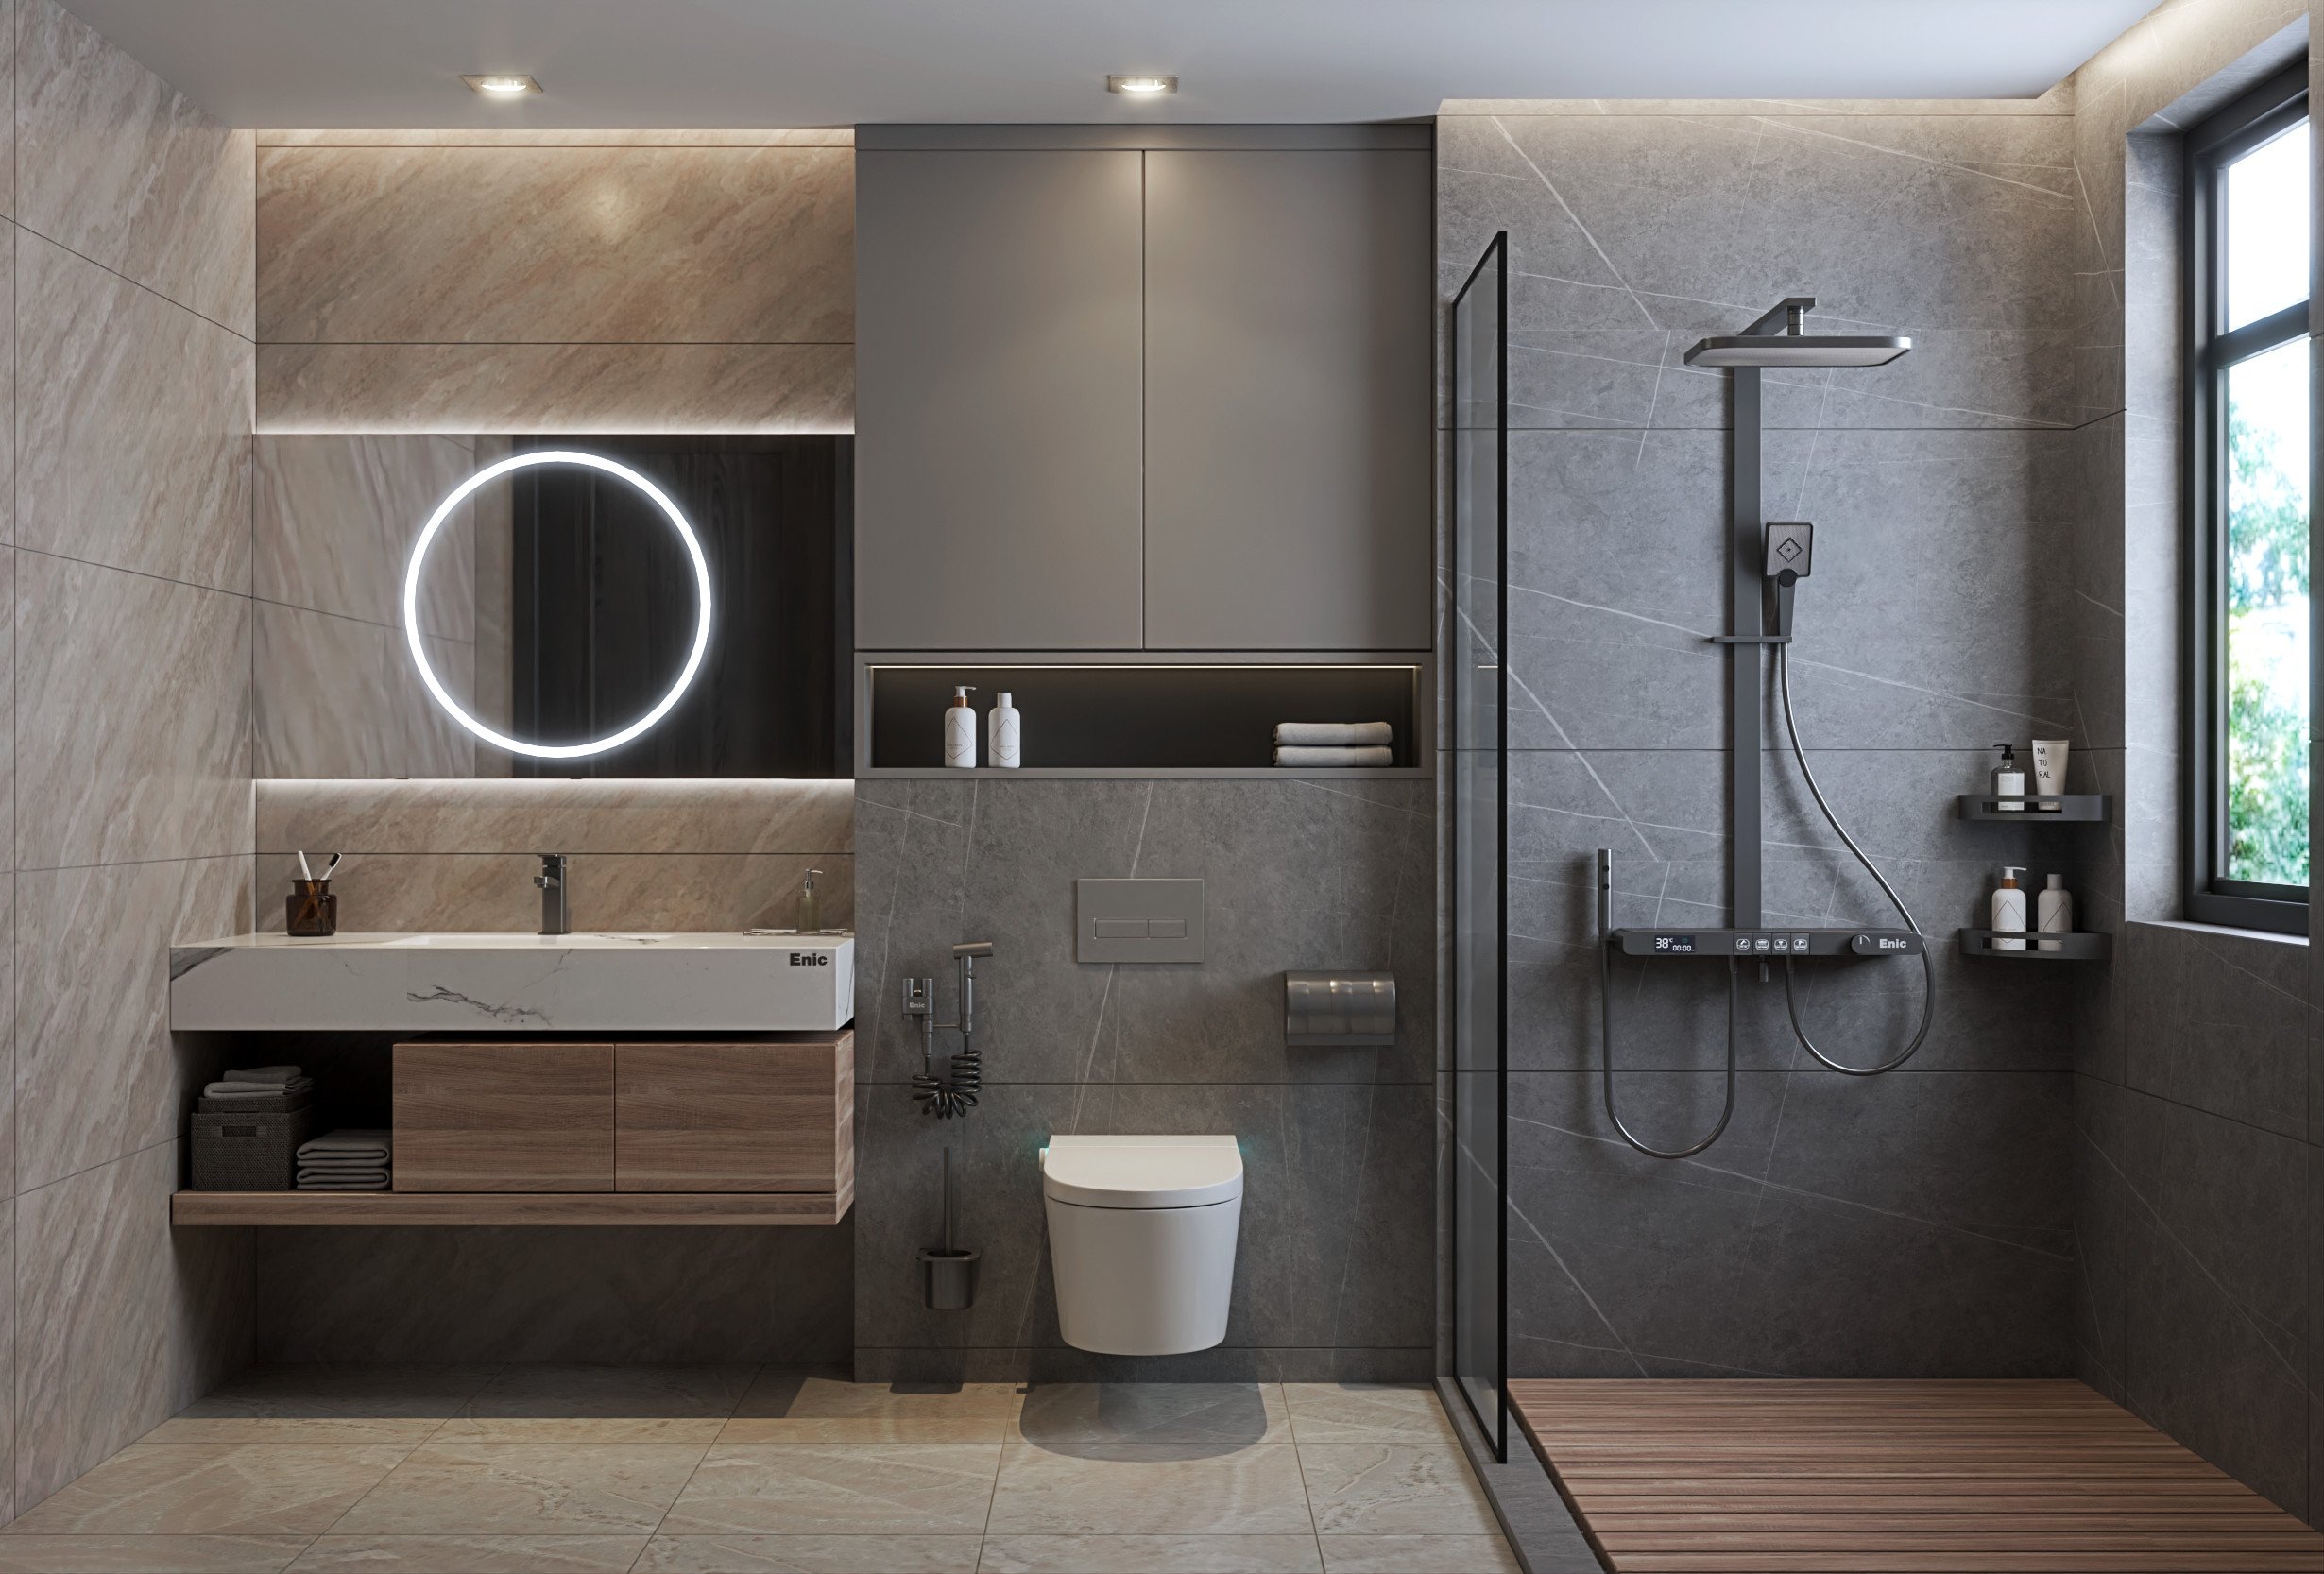 Bố trí phòng tắm cần đo lường các khoảng cách giữa thiết bị vệ sinh để tạo cảm giác thoải mái